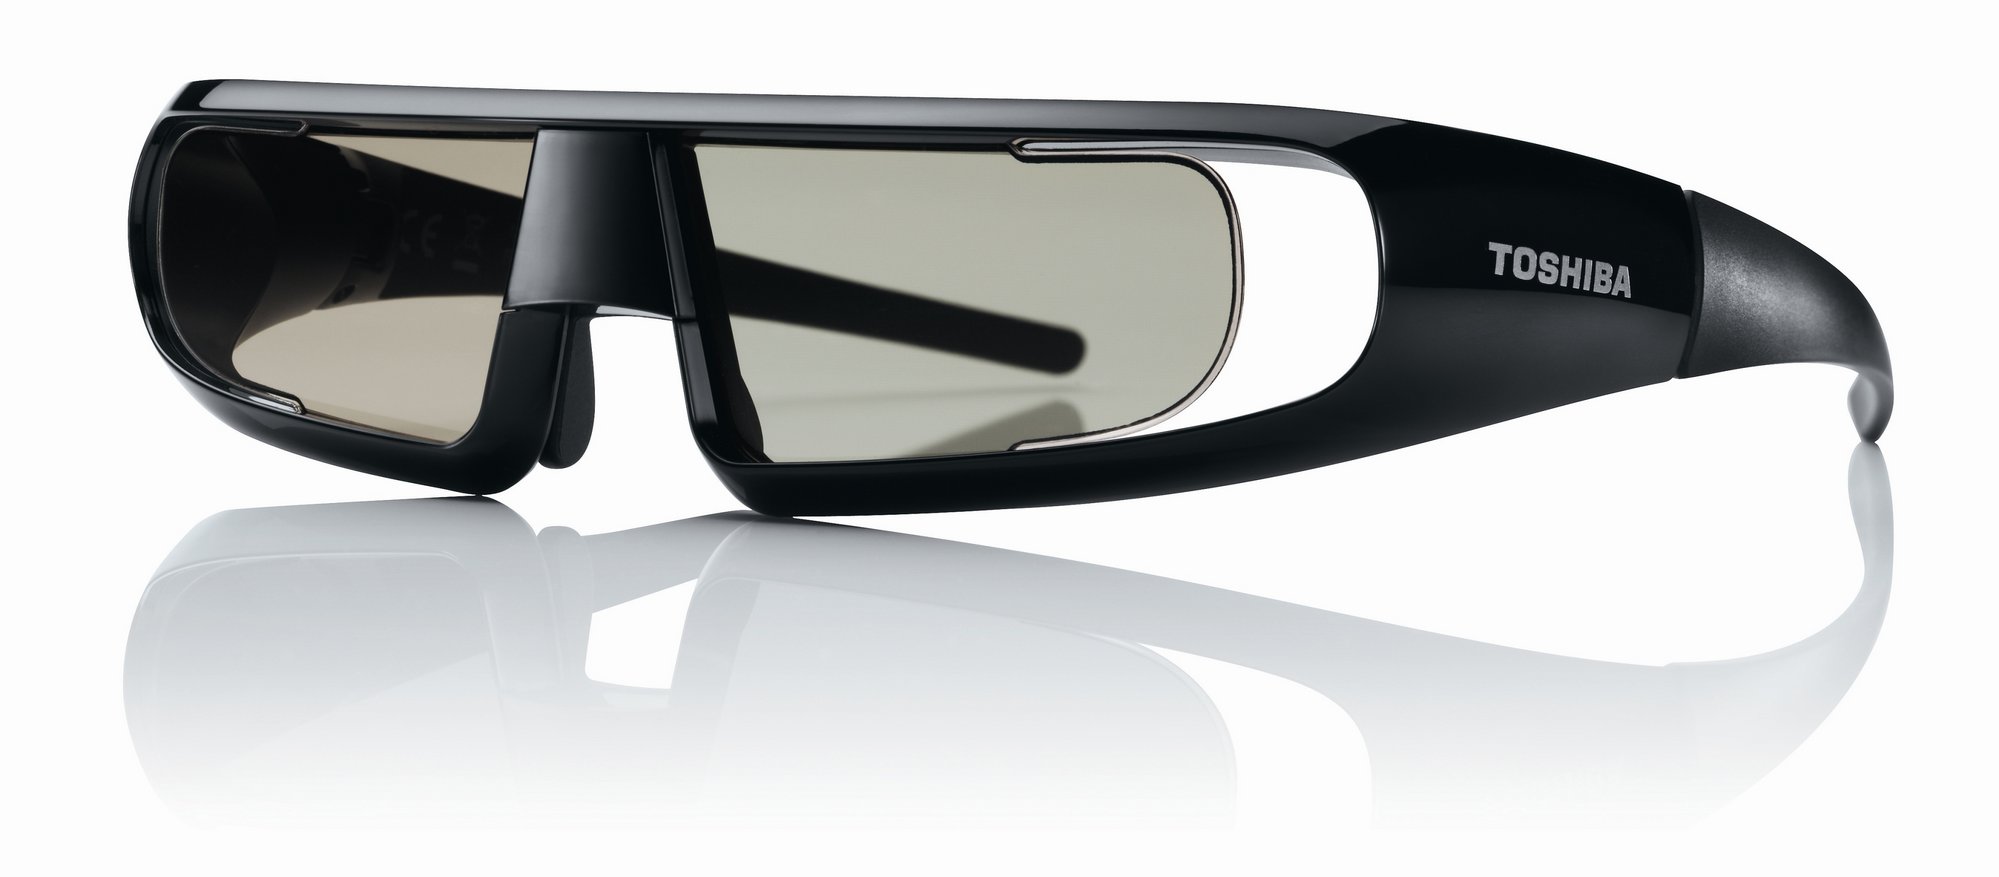 Toshiba lanza unas nuevas gafas 3D más ligeras y económicas